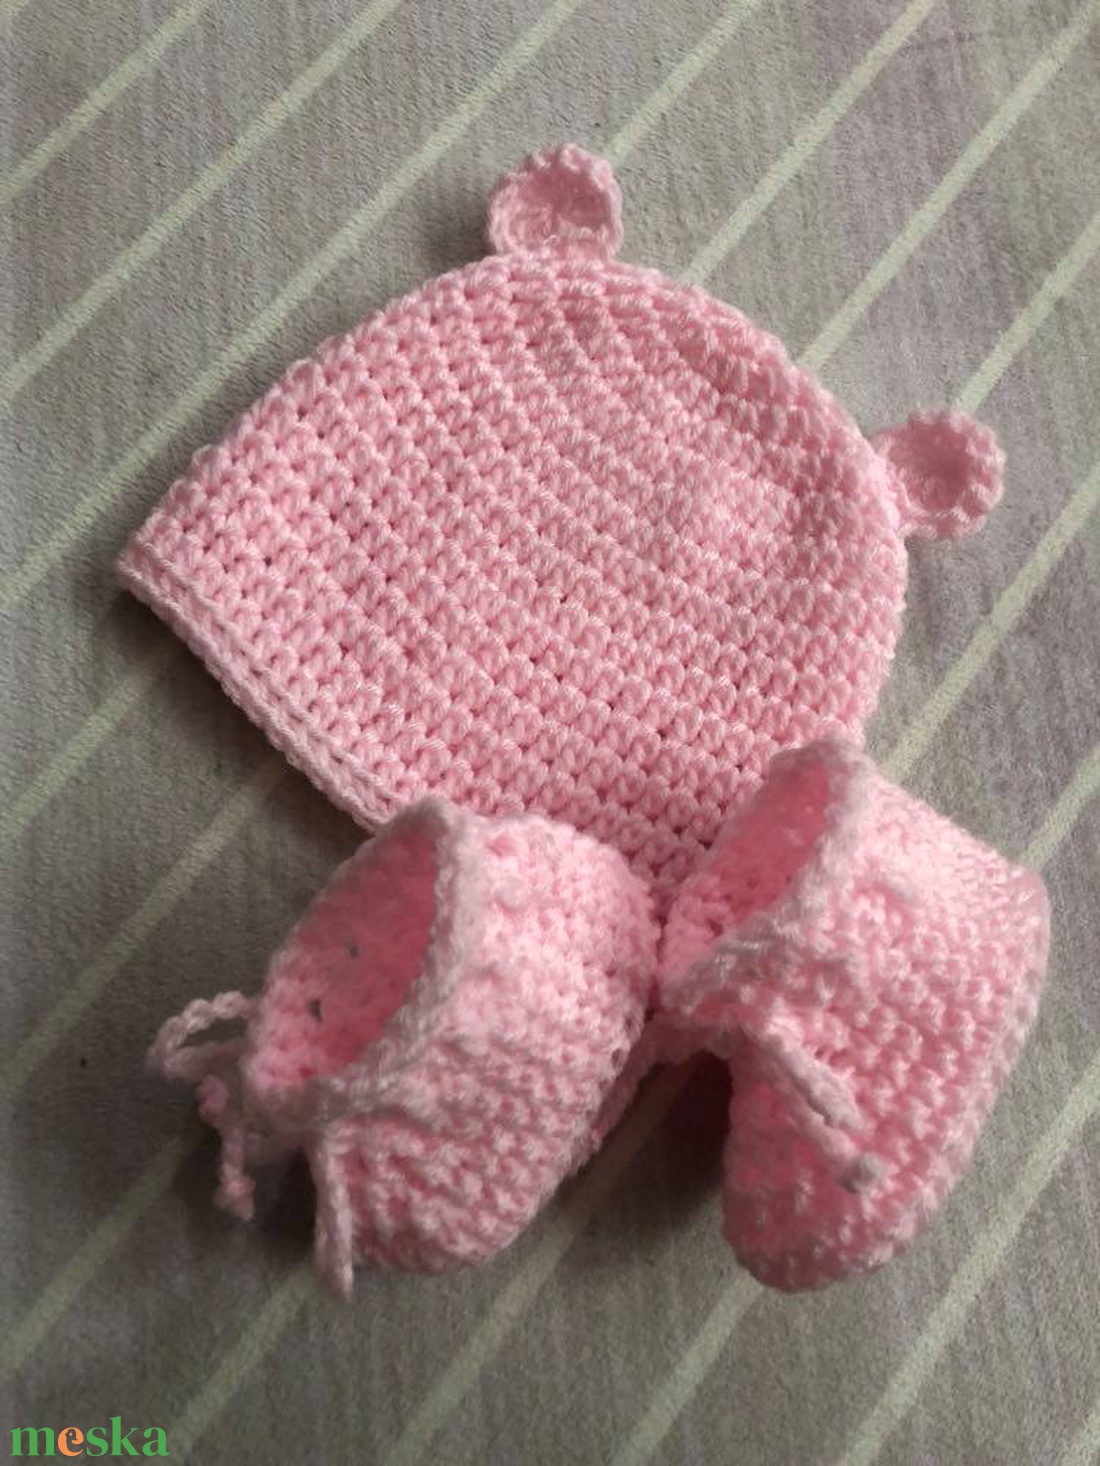 Macisapka-cipő szett 0-3 hónapos méret, rózsaszín/babafotózáshoz is - ruha & divat - babaruha & gyerekruha - babasapka - Meska.hu